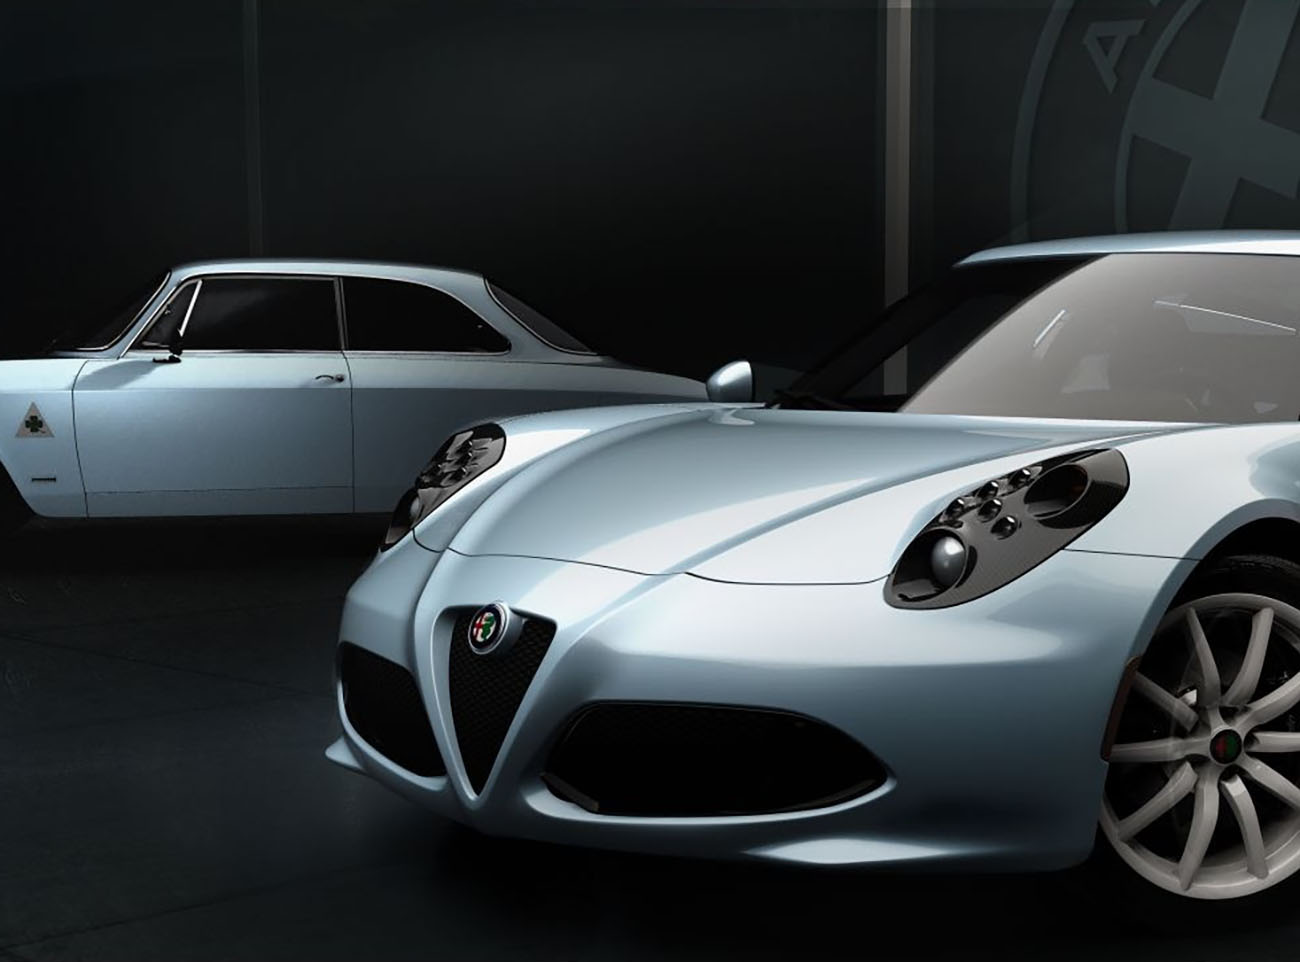 Η Alfa Romeo διασφαλίζει το παρελθόν, το παρόν και το μέλλον της